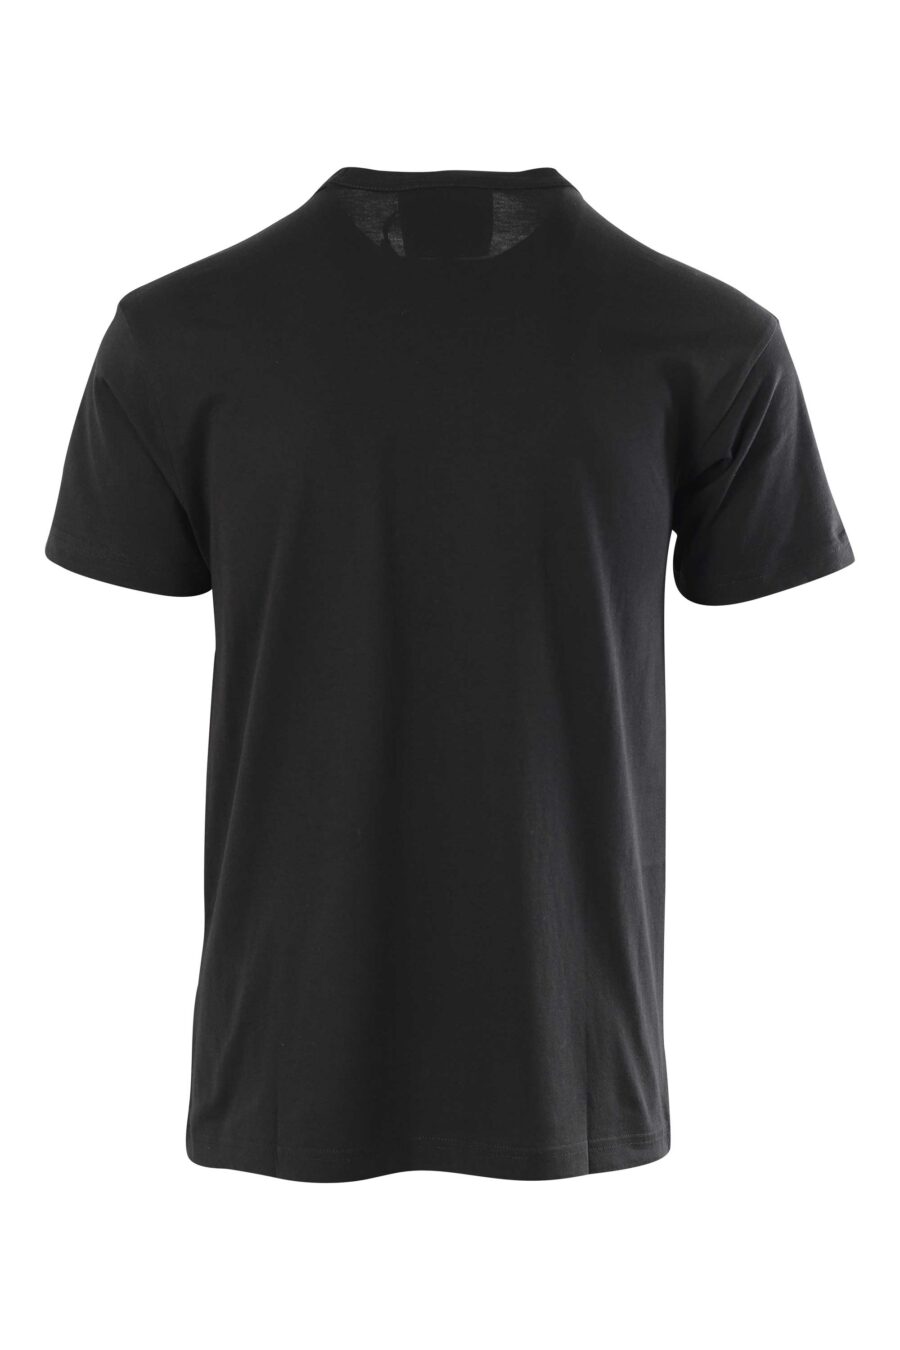 T-shirt preta com maxilogue redondo dourado - 8052019325171 2